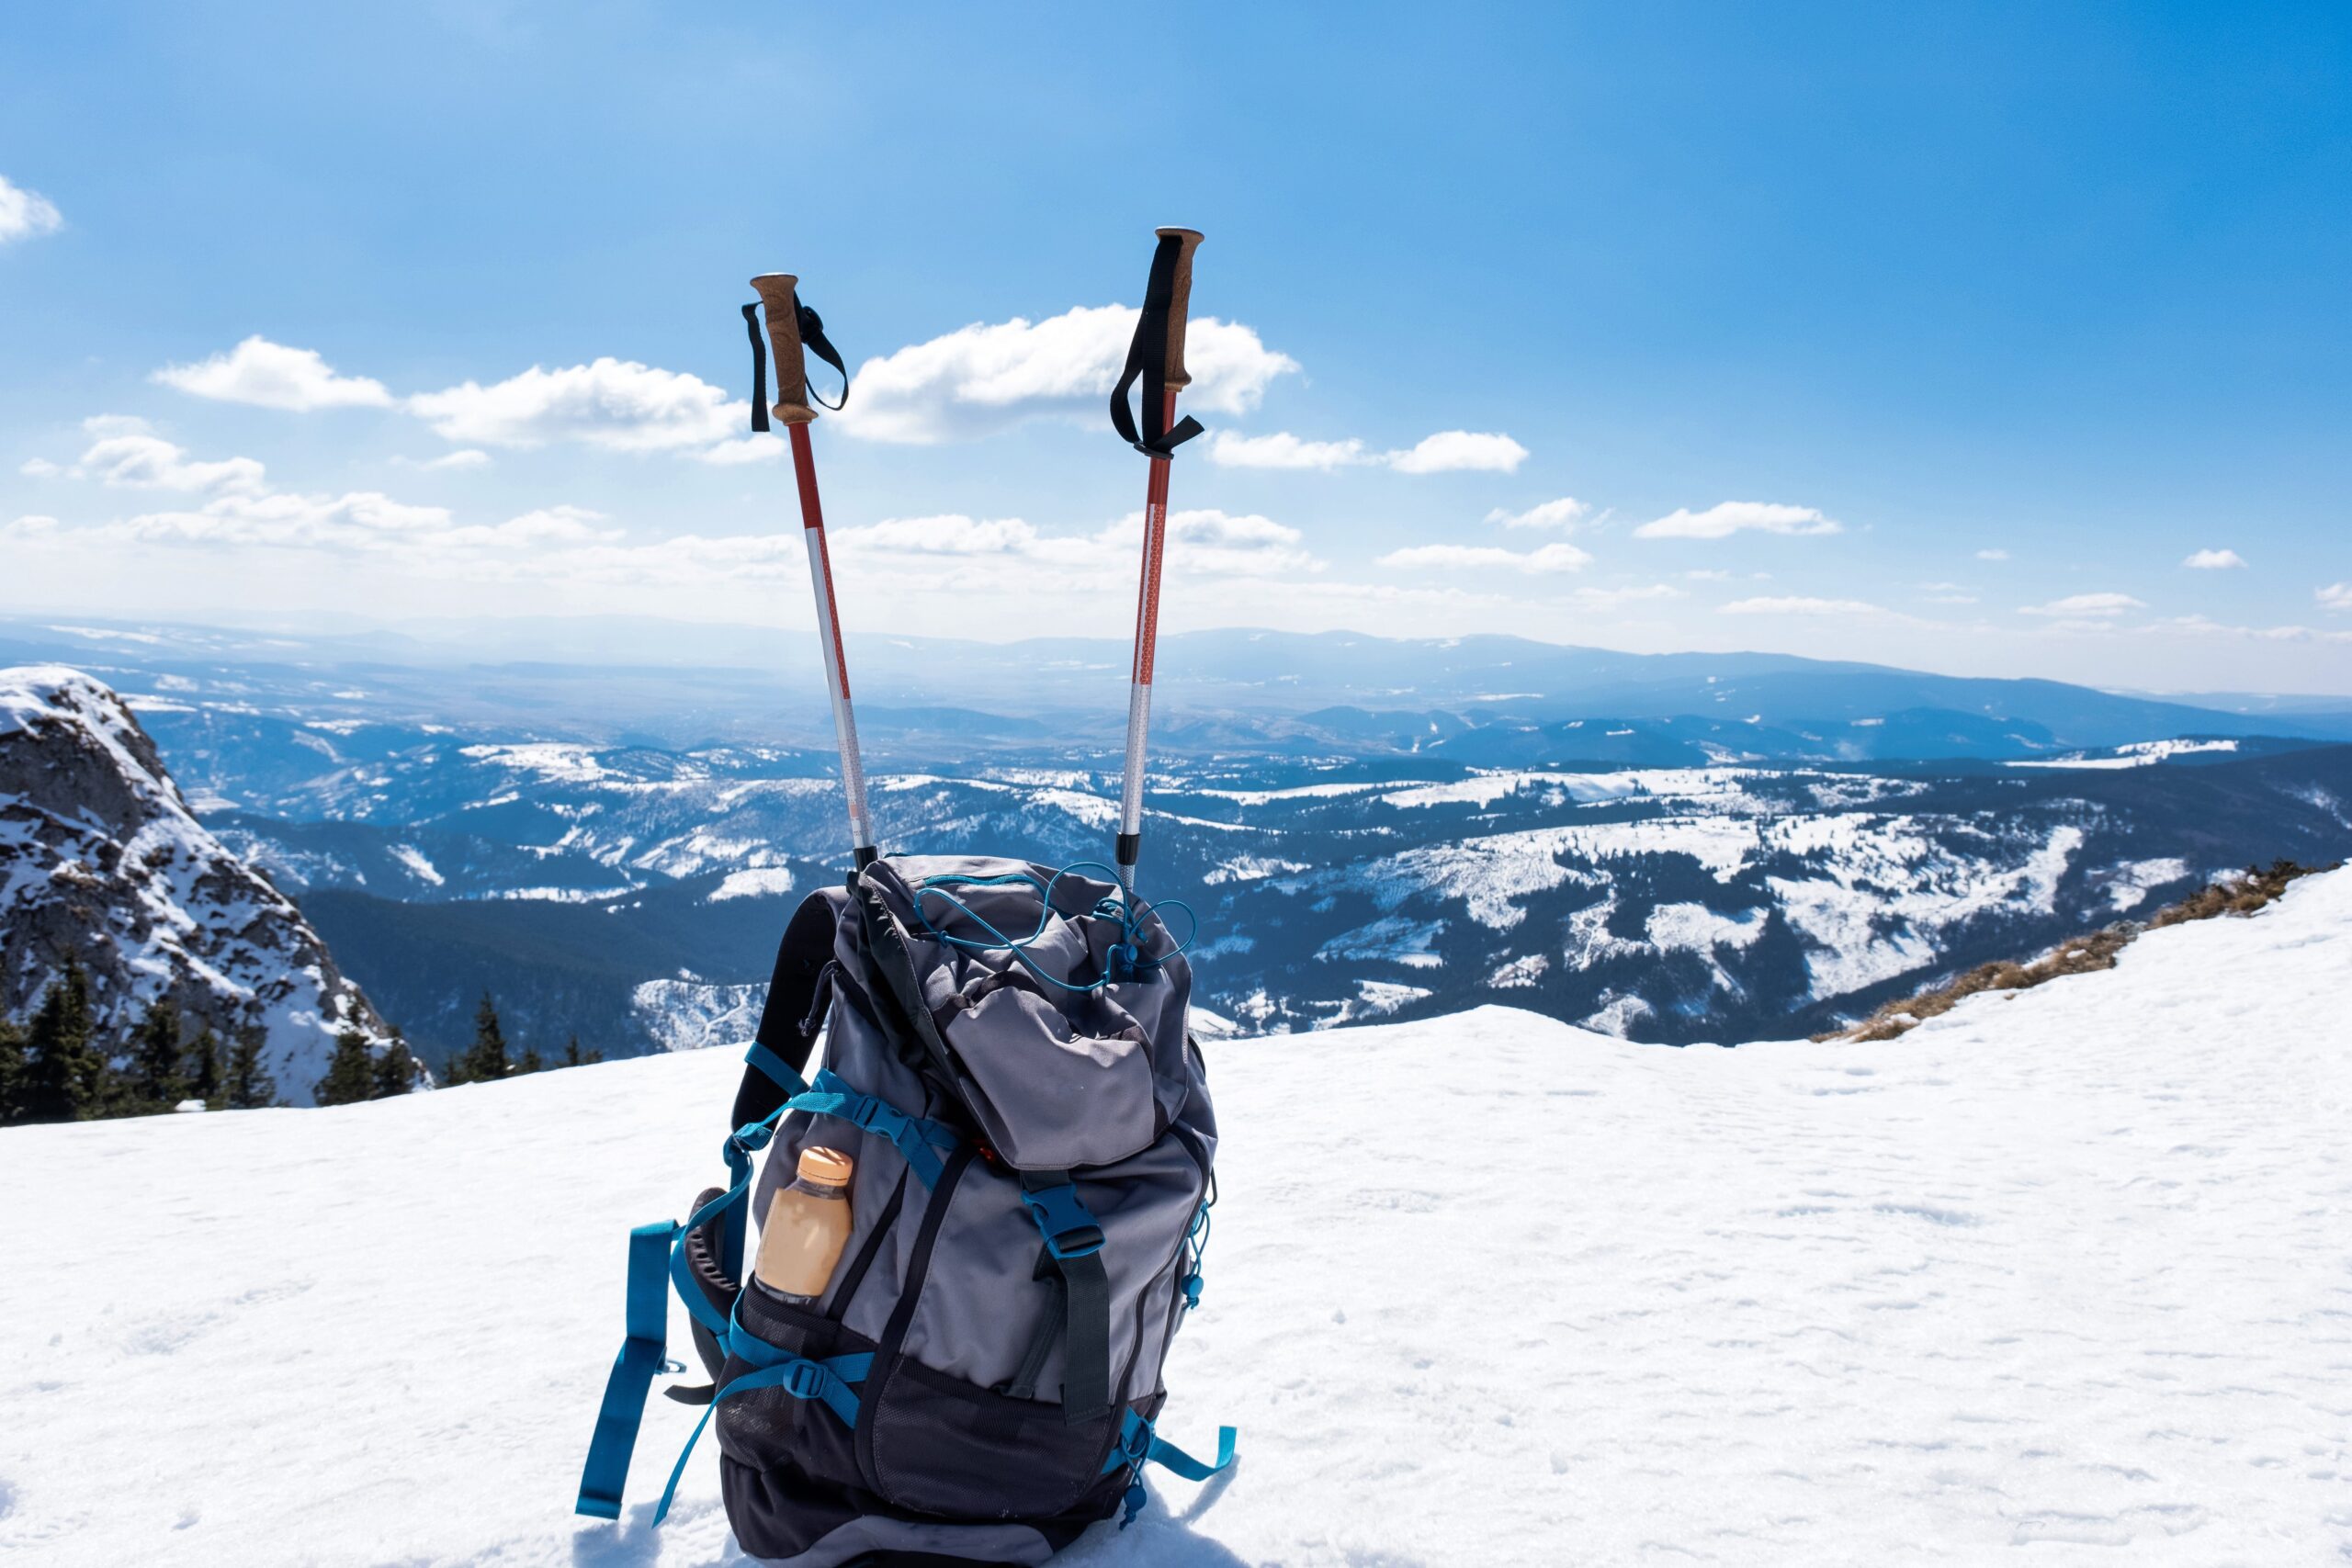 معرفی لیست تجهیزات کوهنوردی برای افراد مبتدی